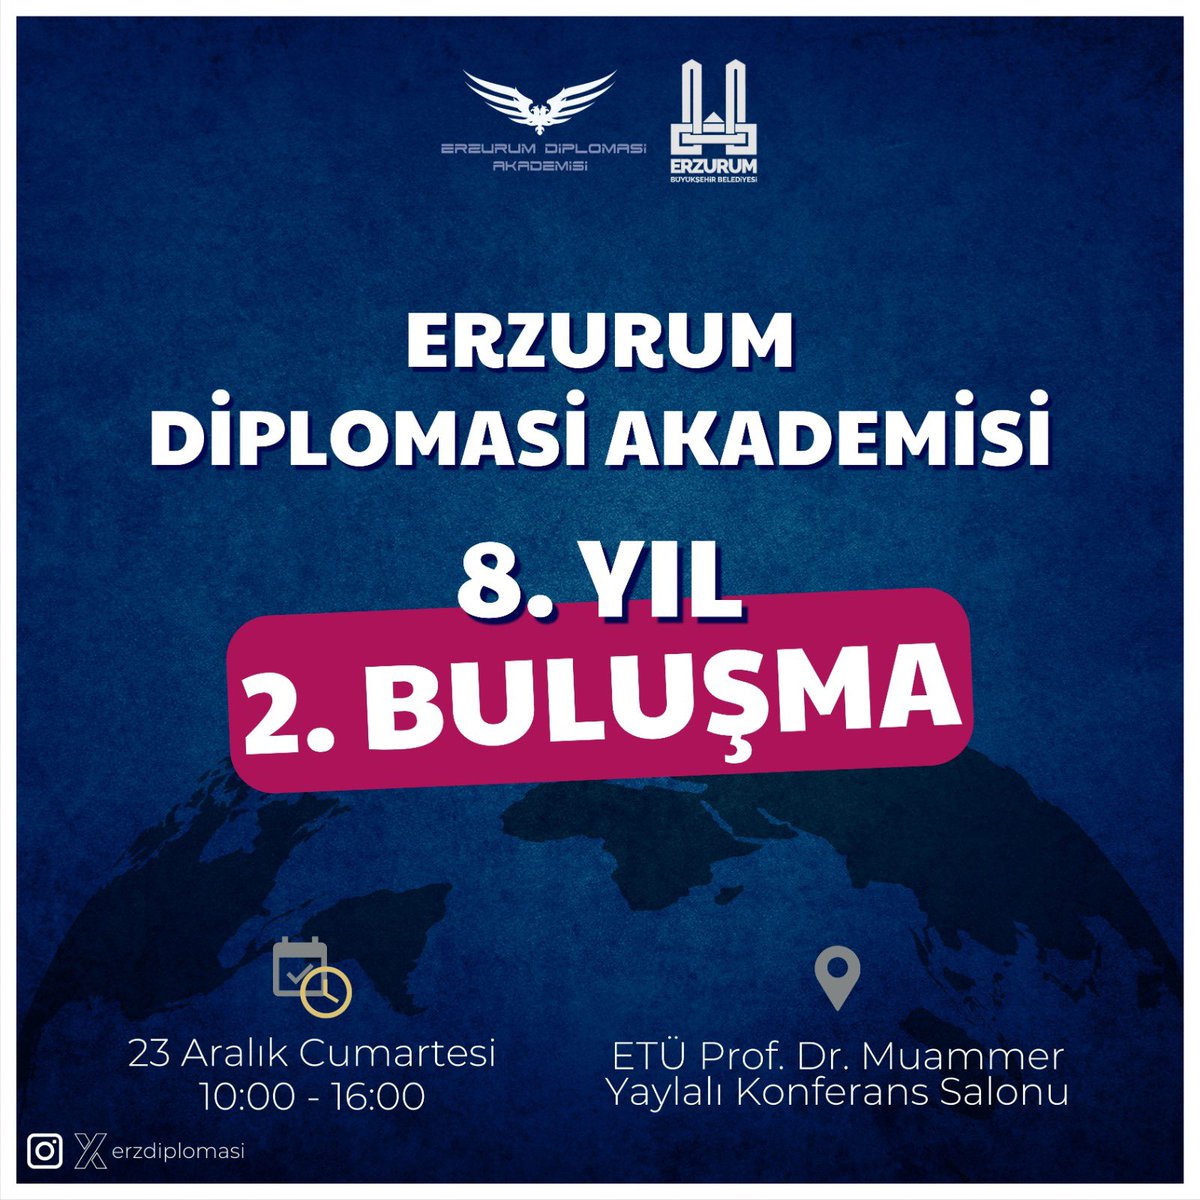 Erzurum Diplomasi Akademisi 8. yıl 2. buluşması 23 Aralık Cumartesi günü ETÜ Prof. Dr. Muammer Yaylalı Konferans Salonunda saat 10.00-16.00 arası gerçekleşecektir. 2. buluşmanın konuğu NTV Dış Haberler Müdürü Ahmet Yeşiltepe (@ahmetyesiltepe) olacaktır.